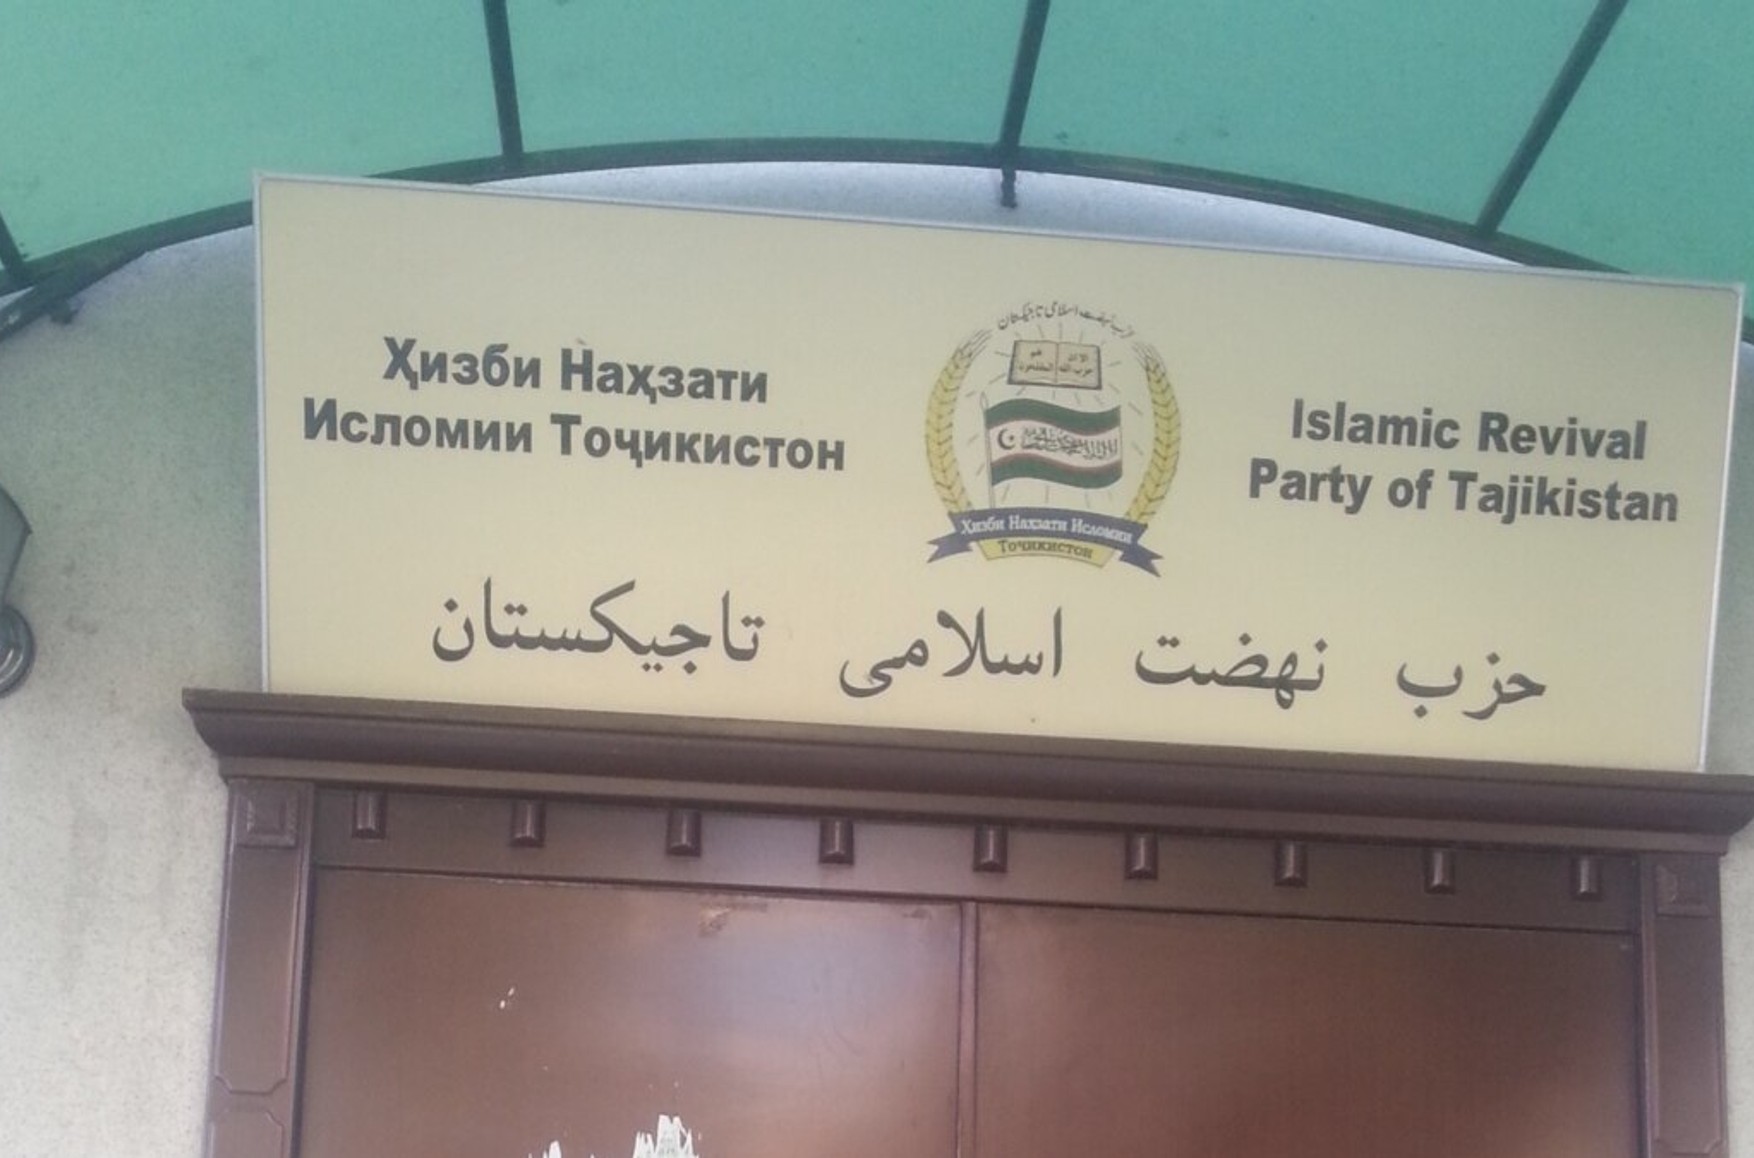 Верховный суд России признал Партию исламского возрождения Таджикистана террористической организацией